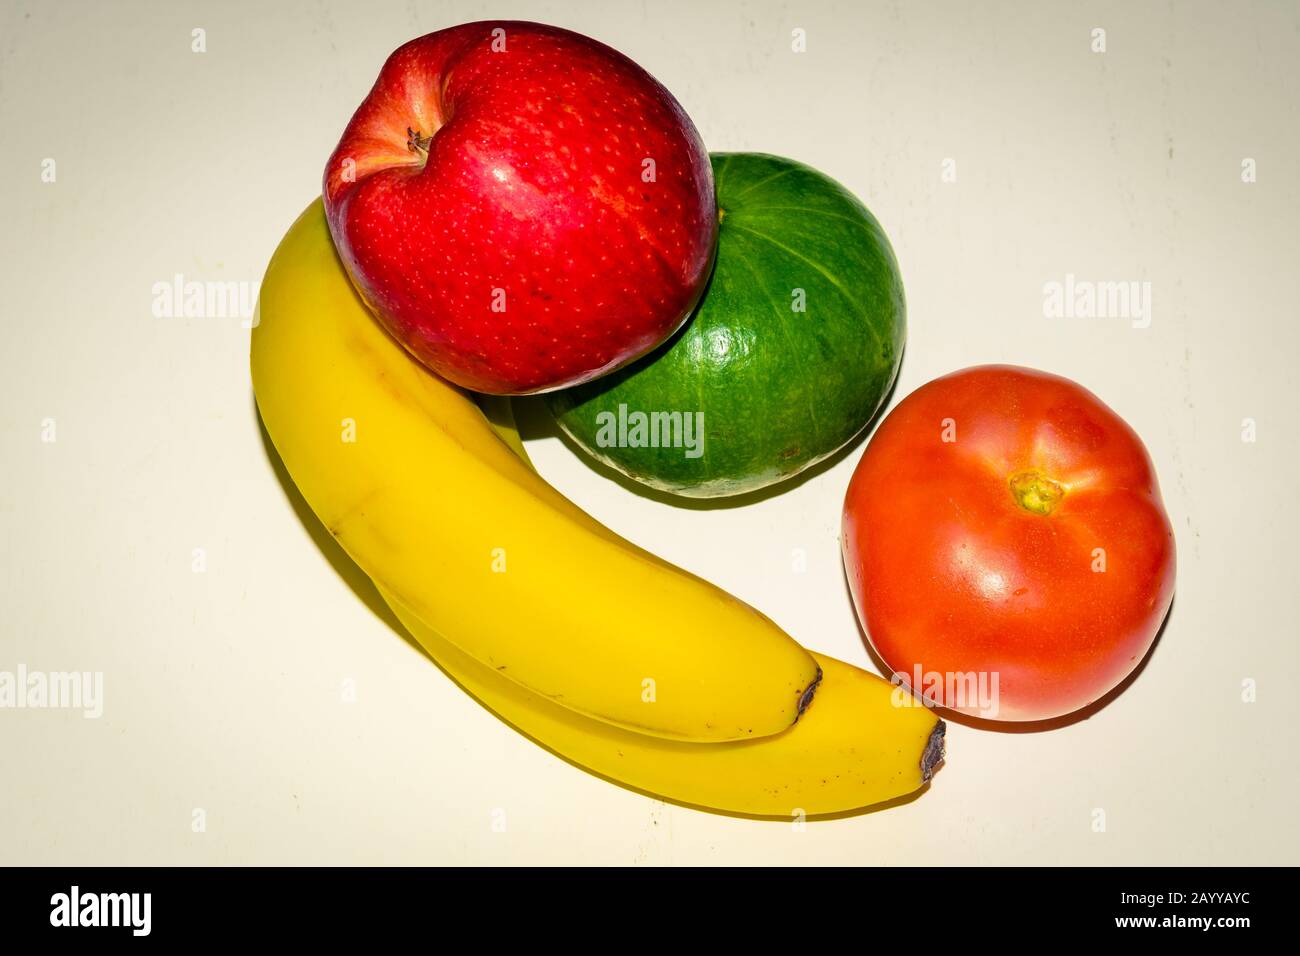 Verschiedene Obst- und Gemüsesorten. Apfel, Banane, Obstkorb. Pfeffer. Tomate Stockfoto